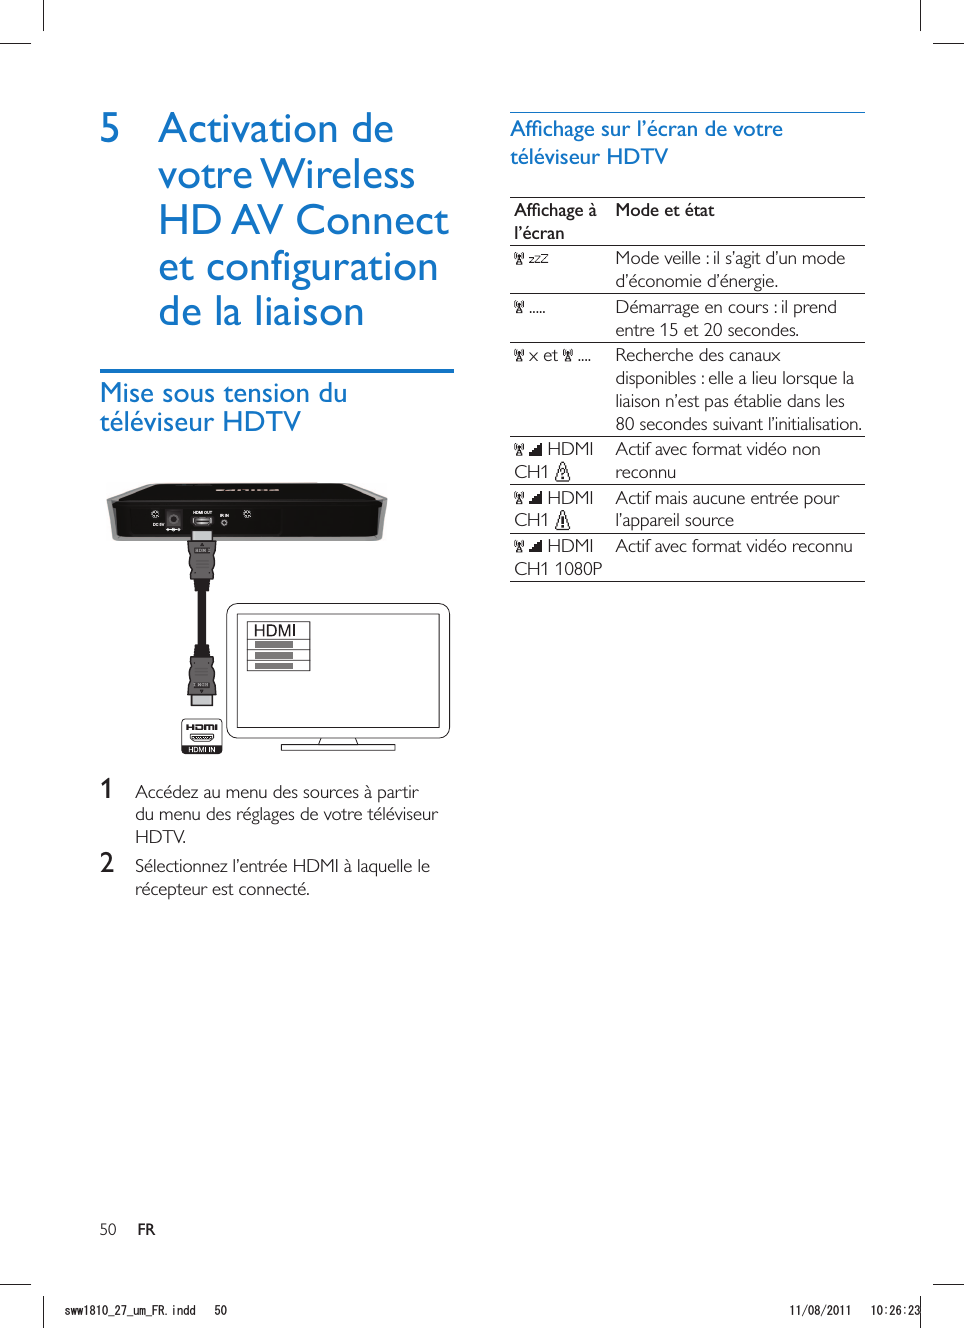 50 FRl’écranMode et état  Mode veille : il s’agit d’un mode d’économie d’énergie. ..... Démarrage en cours : il prend entre 15 et 20 secondes. x et   .... Recherche des canaux disponibles : elle a lieu lorsque la liaison n’est pas établie dans les 80 secondes suivant l’initialisation.   HDMI CH1 Actif avec format vidéo non reconnu   HDMI CH1 Actif mais aucune entrée pour l’appareil source   HDMI CH1 1080PActif avec format vidéo reconnu5 Activation de votre Wireless HD AV Connect de la liaisonDC 5VHDMI OUT IR INHDM IHDM I  1  Accédez au menu des sources à partir du menu des réglages de votre téléviseur HDTV.2  Sélectionnez l’entrée HDMI à laquelle le récepteur est connecté.UYYAAWOA(4KPFF 